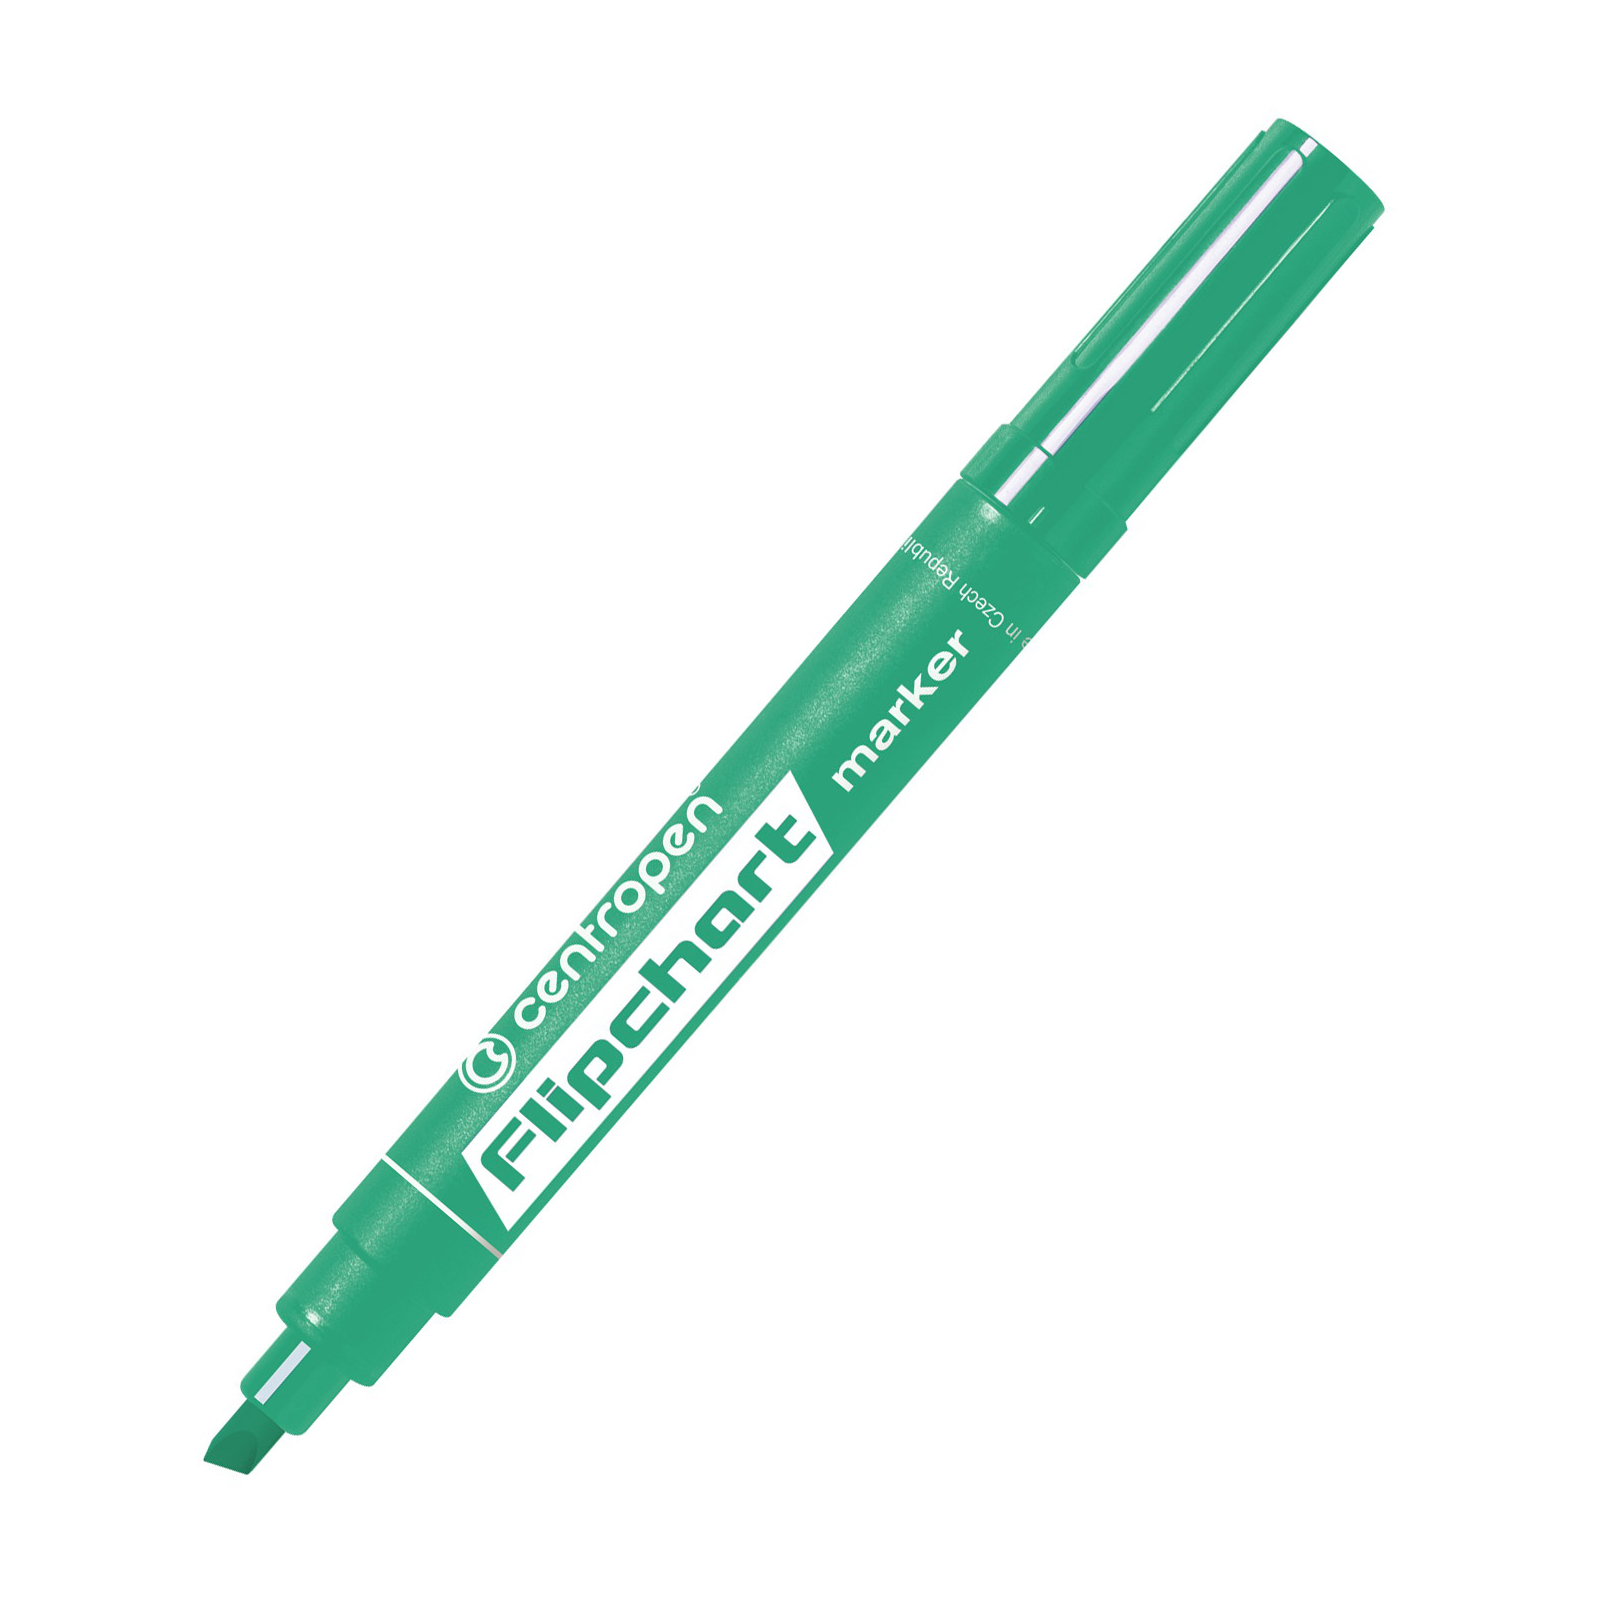 Маркер Centropen Flipchart 8560 1-4,6 мм, chisel tip, green (8560/04)